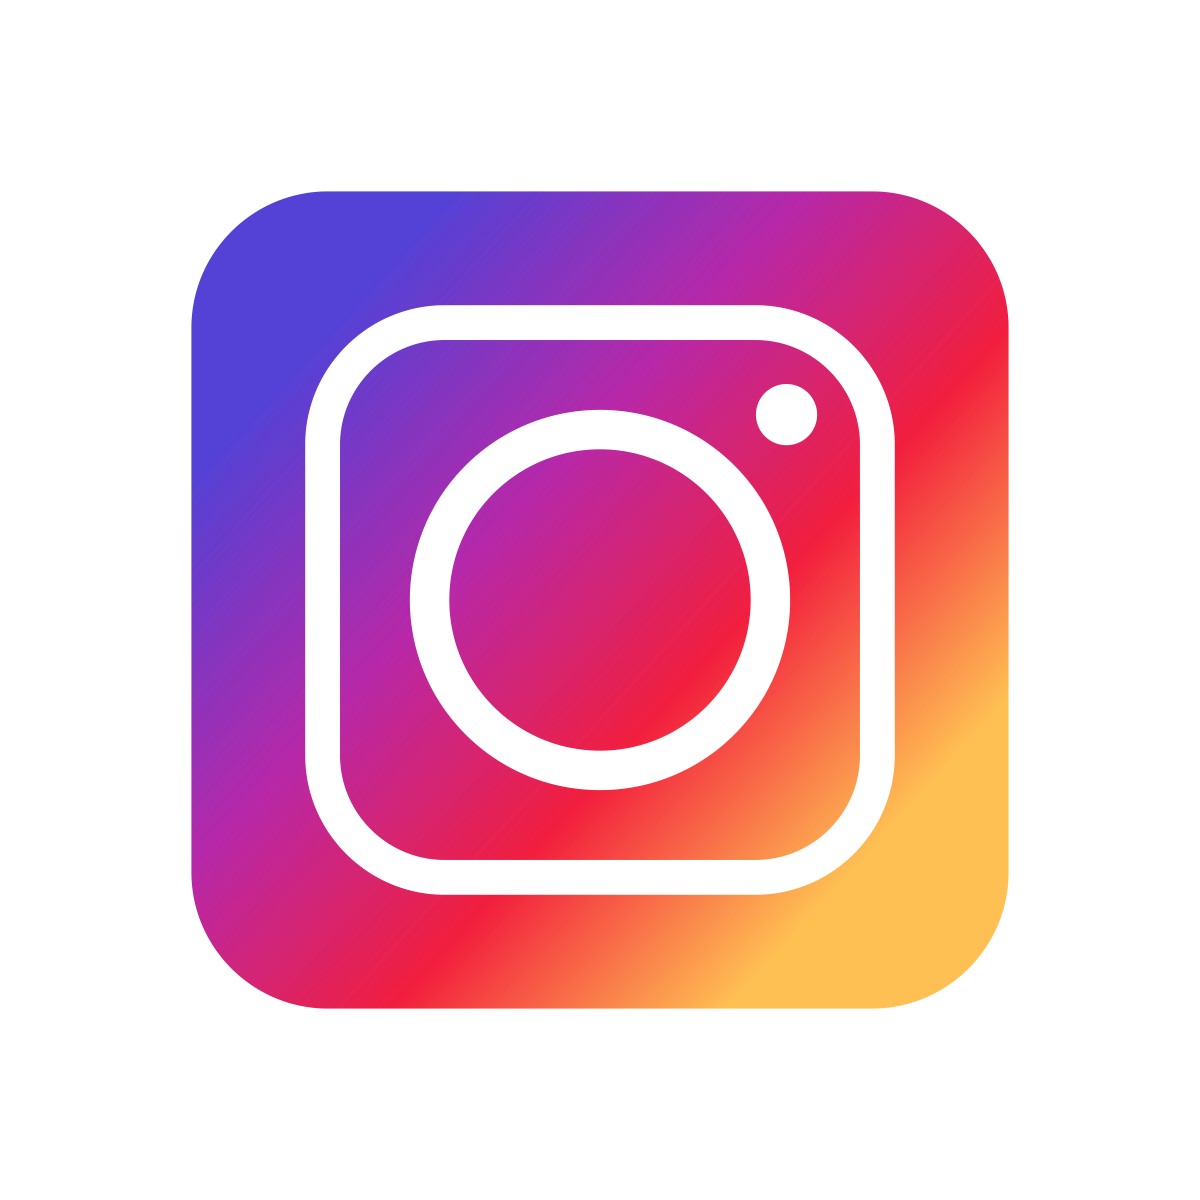 Volg ons via Instagram